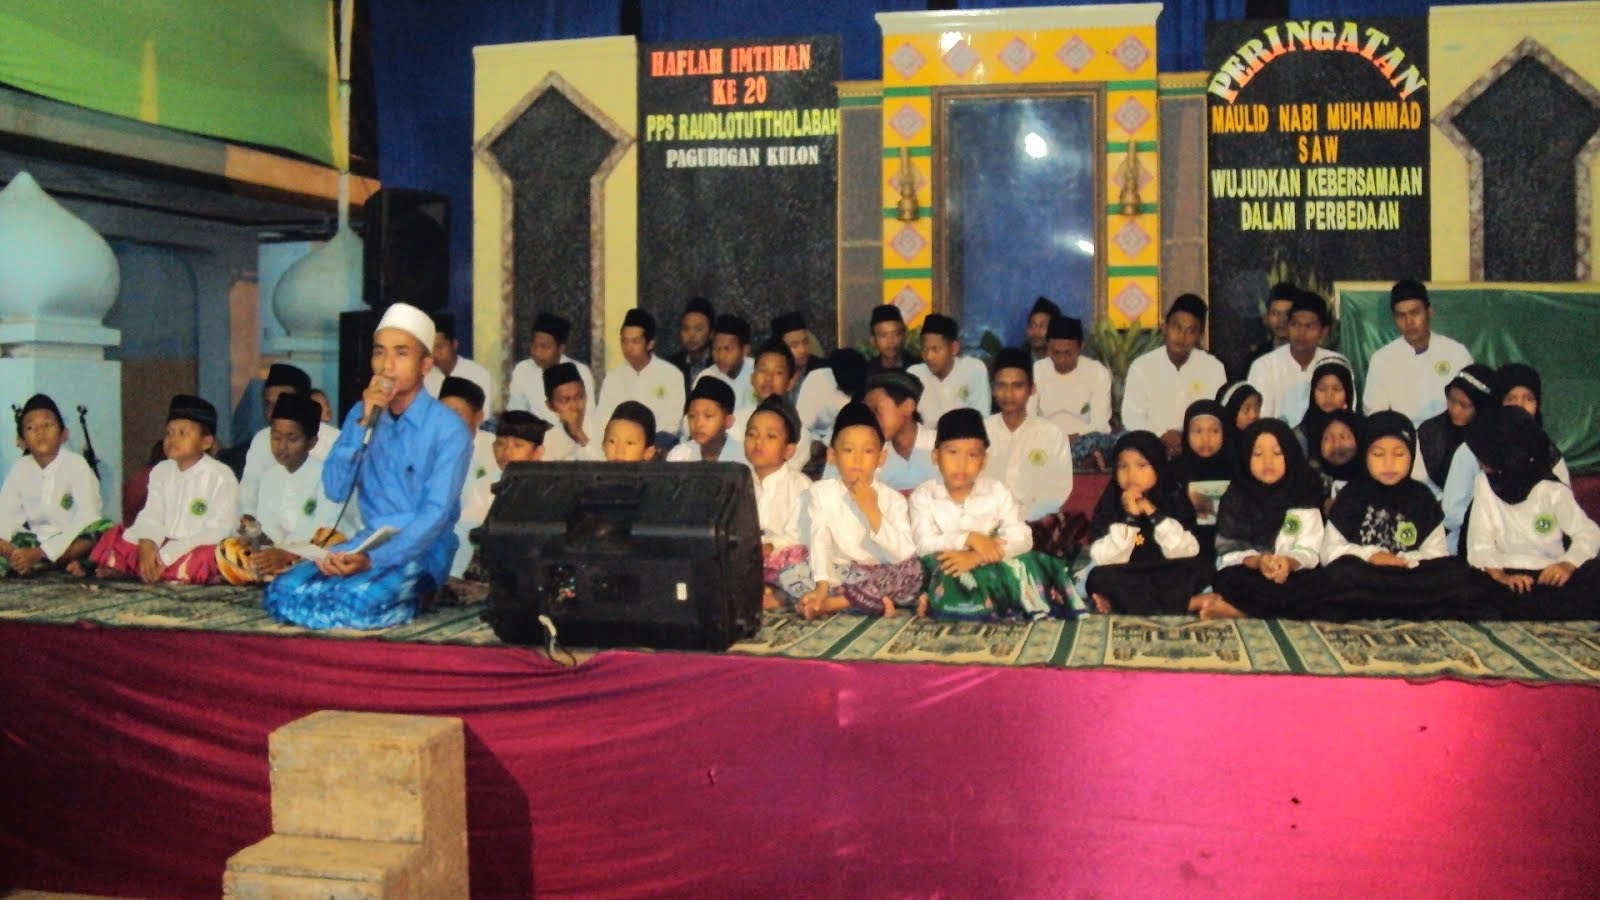 Khaflah Imtihan ke-20 , 2014